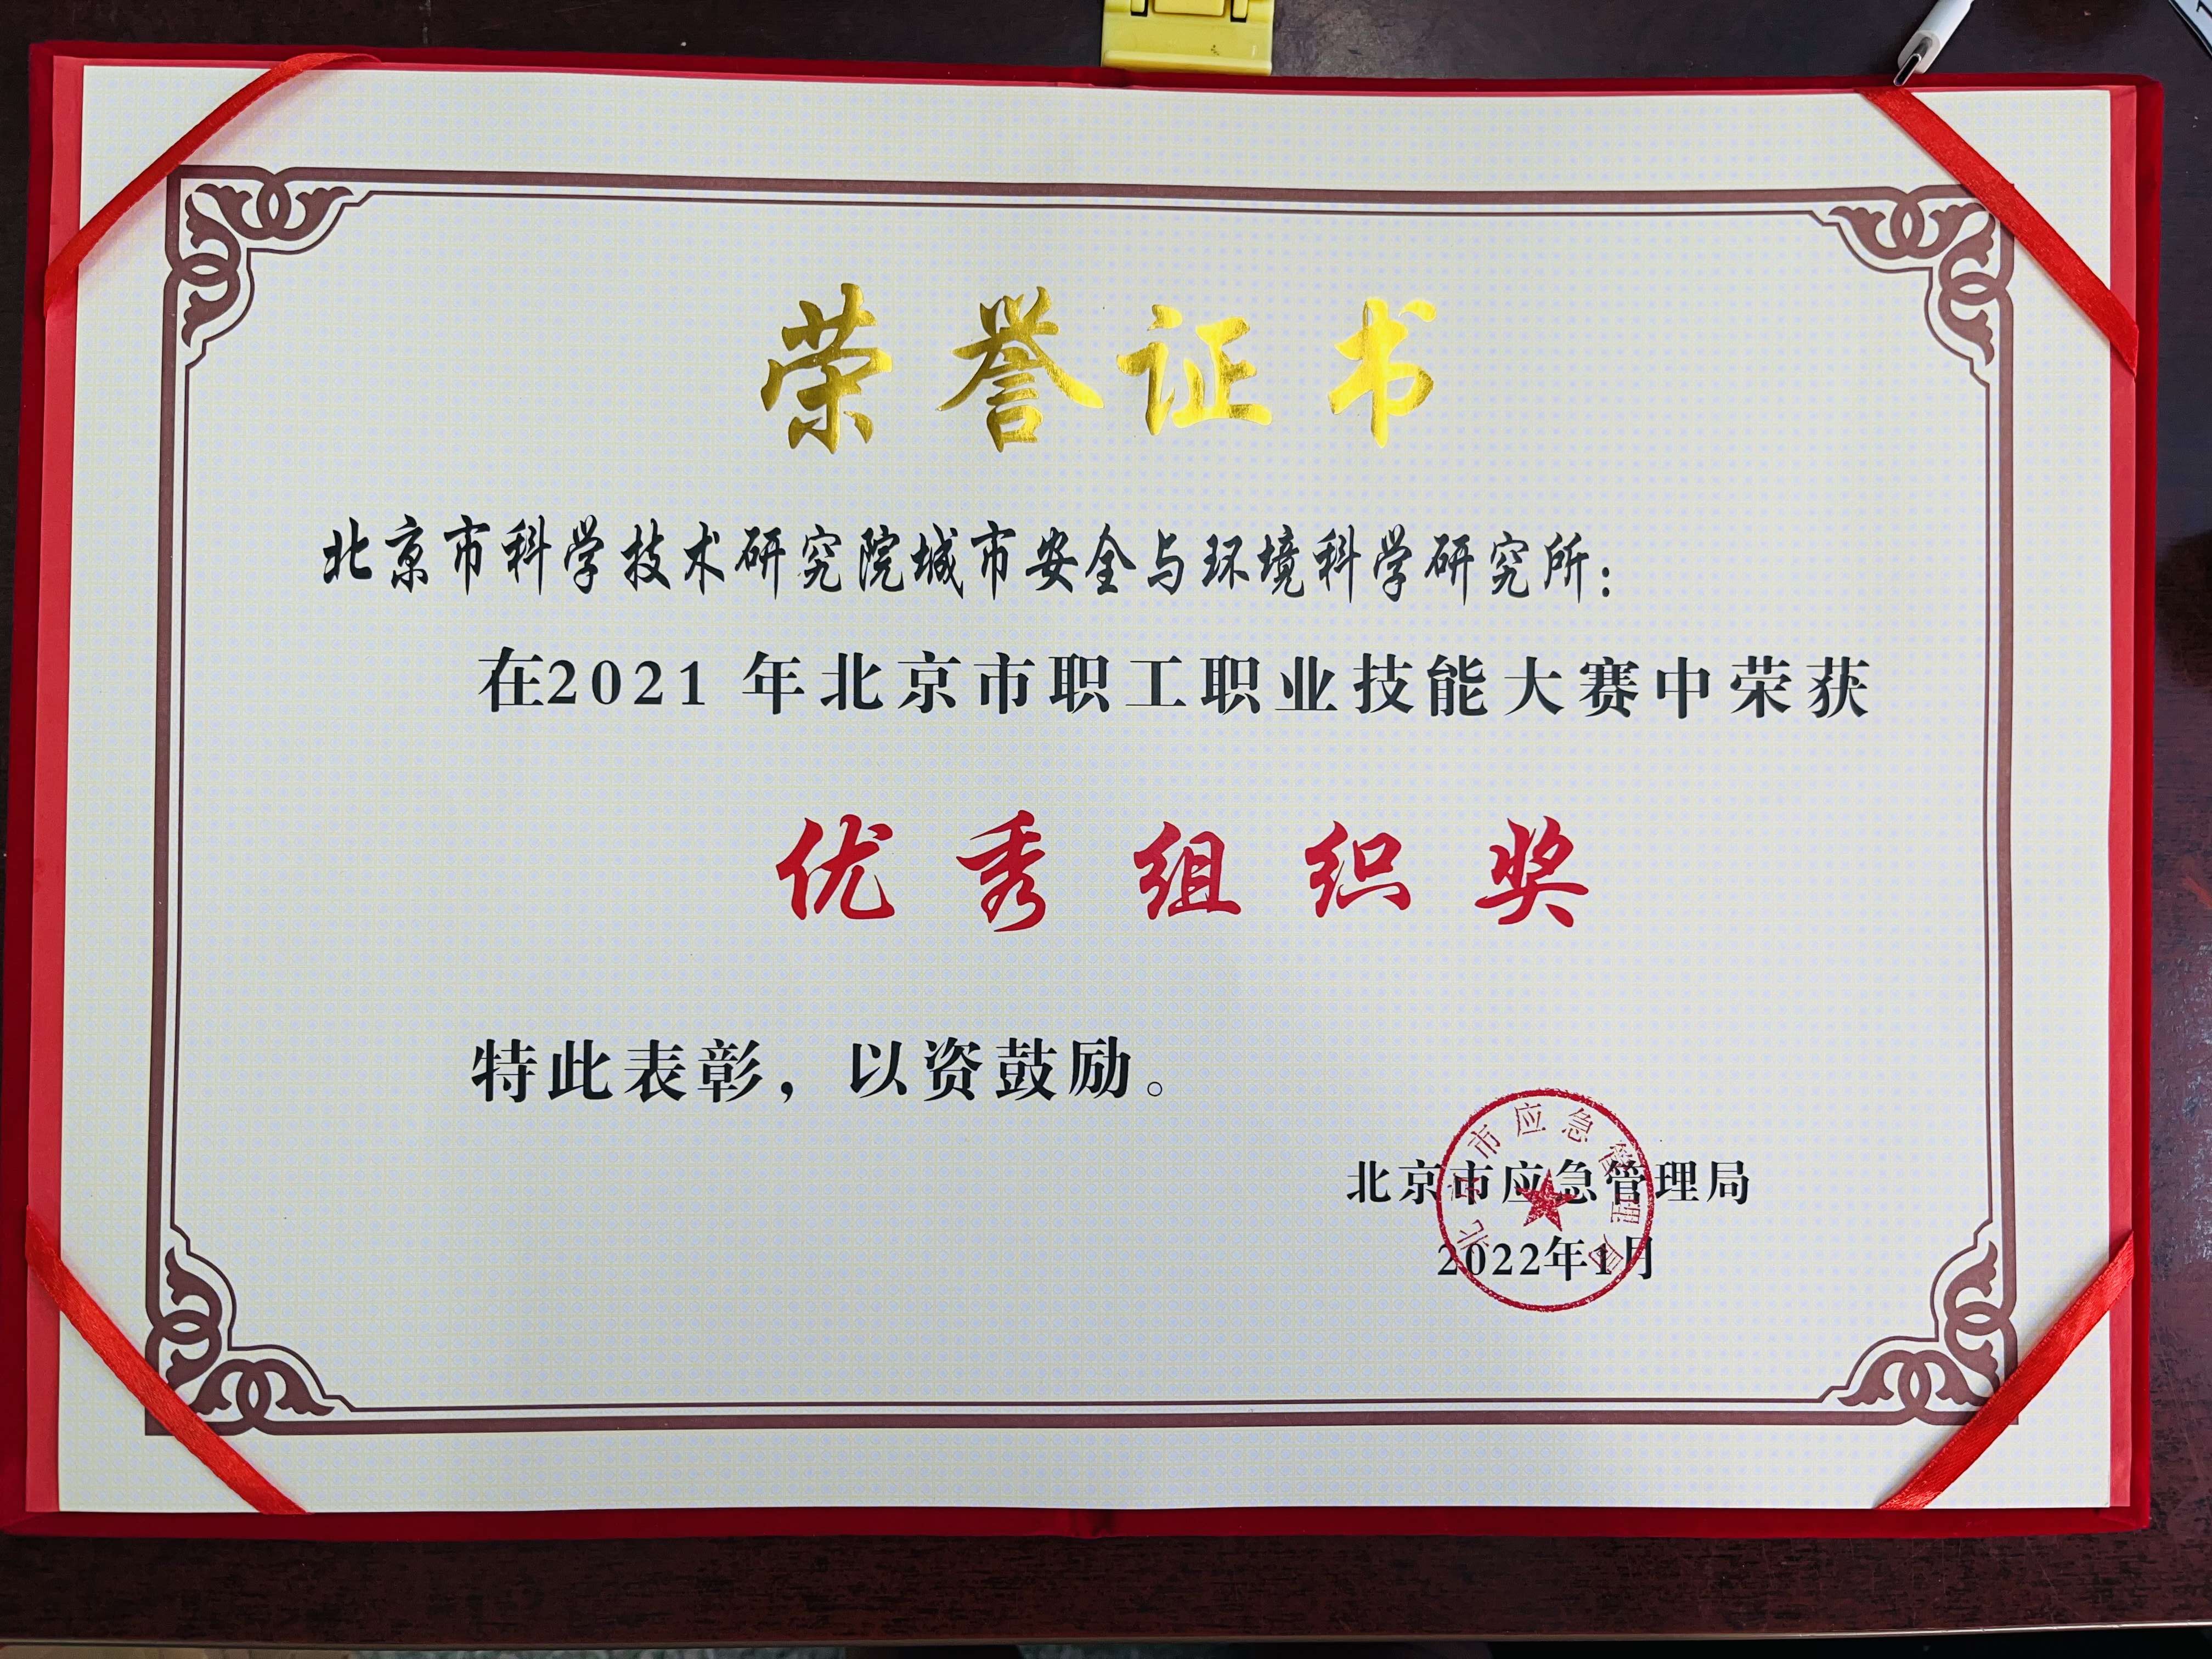 北京市科学技术研究院城市安全与环境科学研究所获得2021年北京市职工职业技能大赛“优秀组织奖”